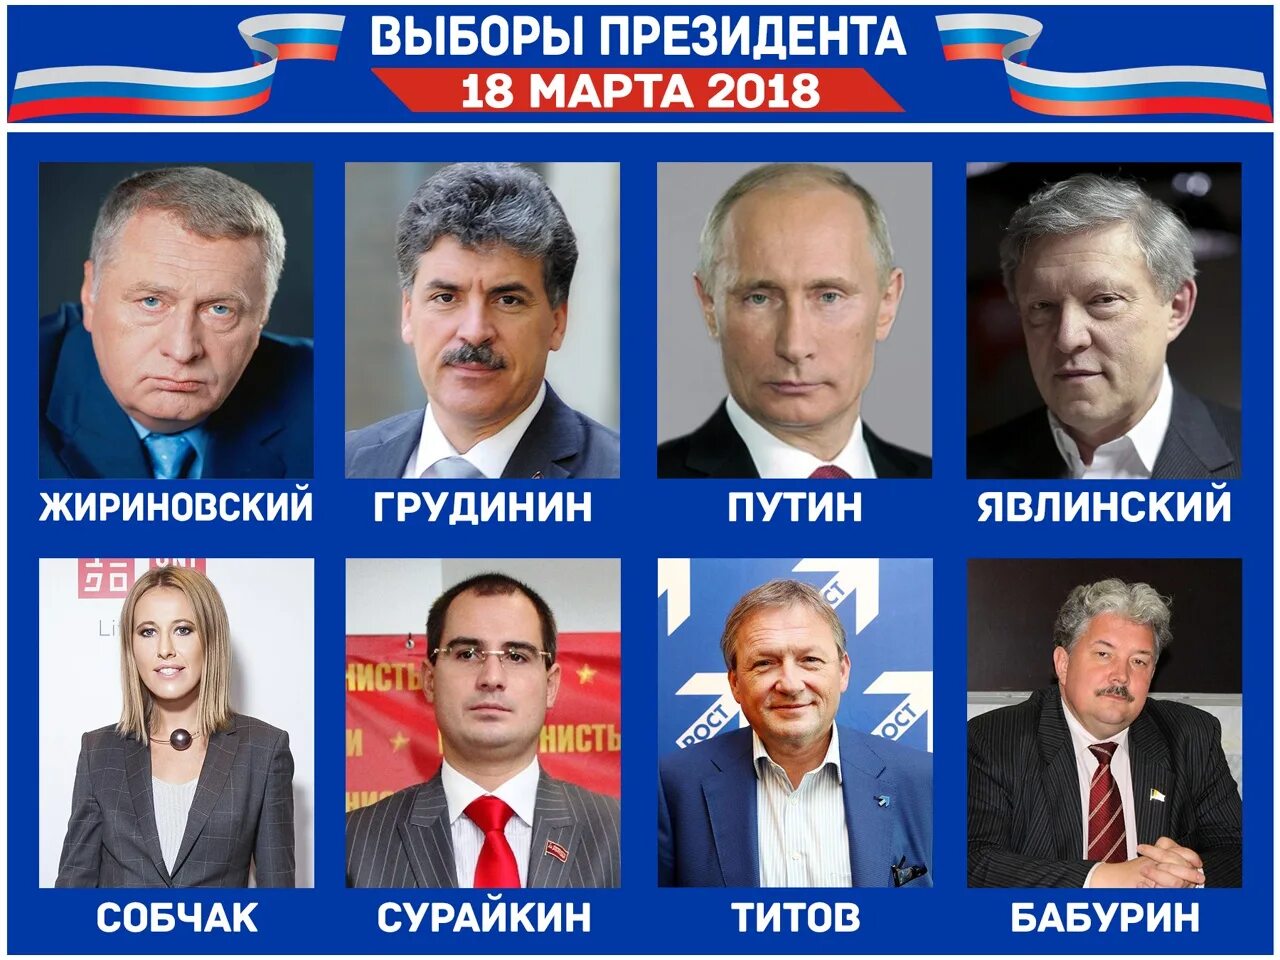 Выборы президента России кандидаты. Выборы президента России 2018 кандидаты. Выборы президента в 2018 году какого числа